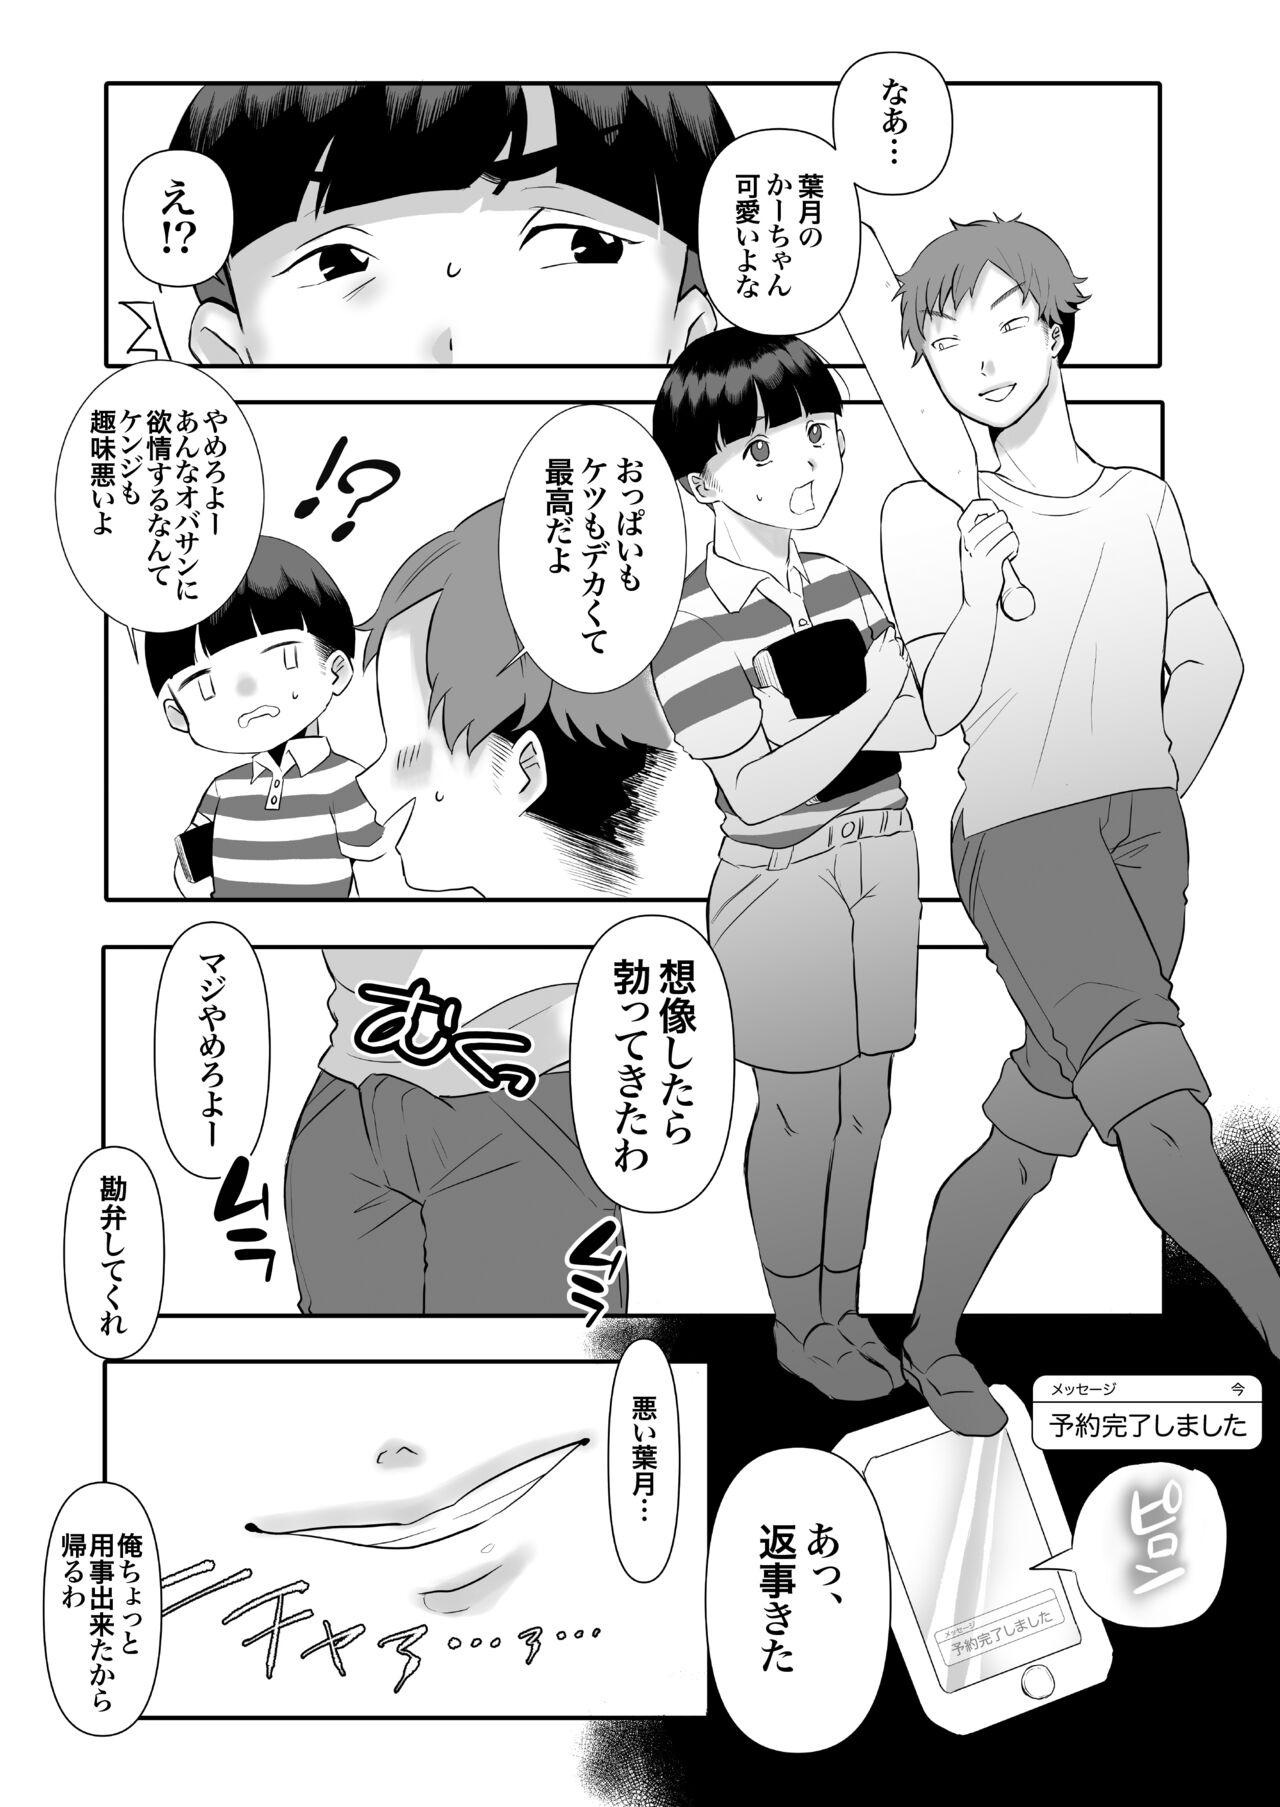 Juicy DeliHeal Yondara Tomodachi no Kaa-chan ga Kita. - Original Hot Blow Jobs - Page 7